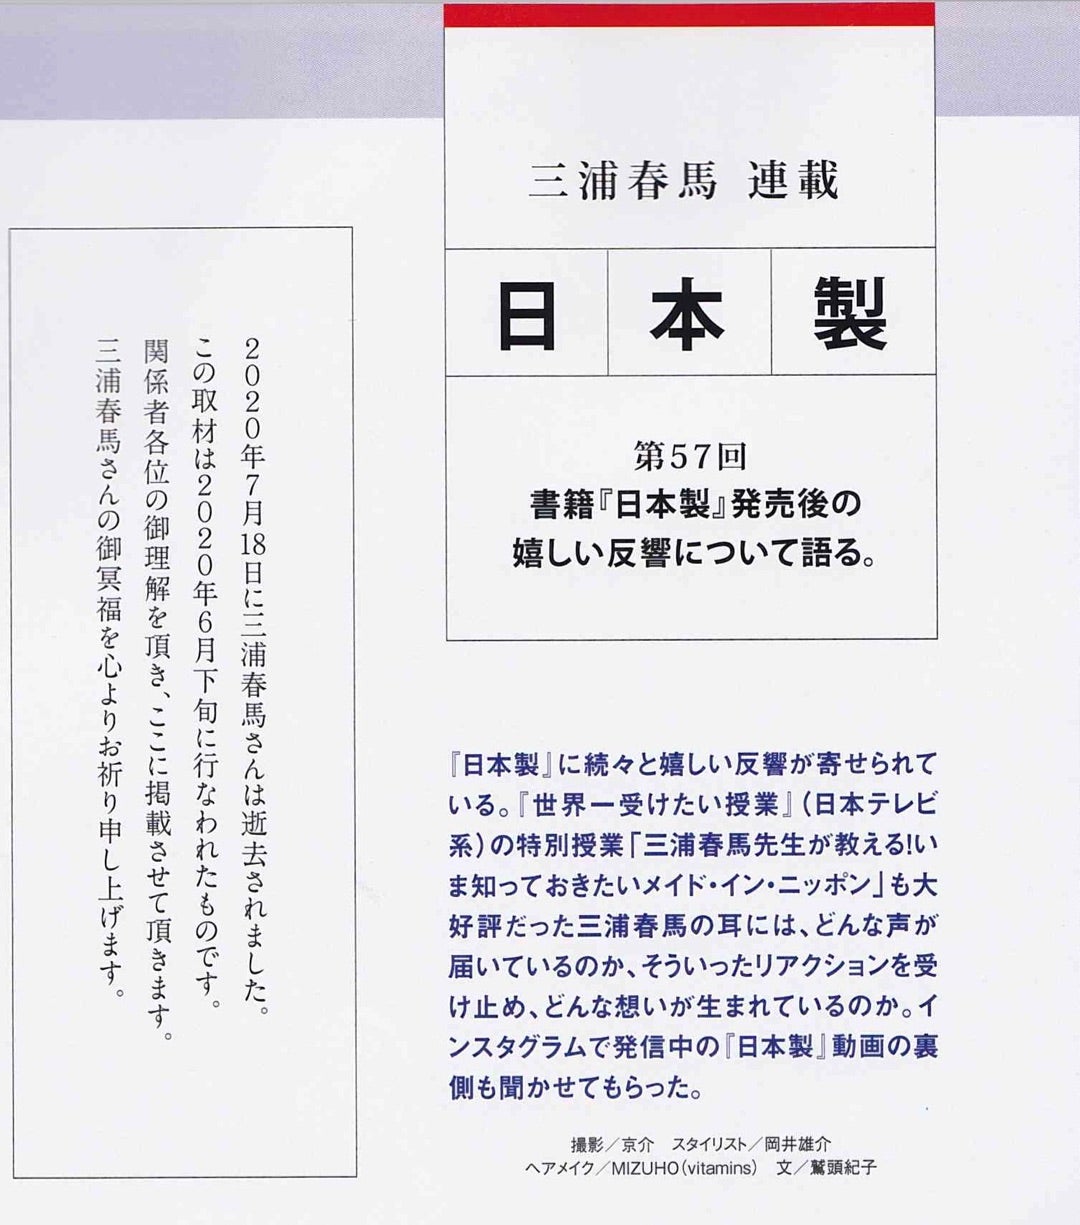 三浦春馬連載「日本製」第57回。 | haruma's kitchen